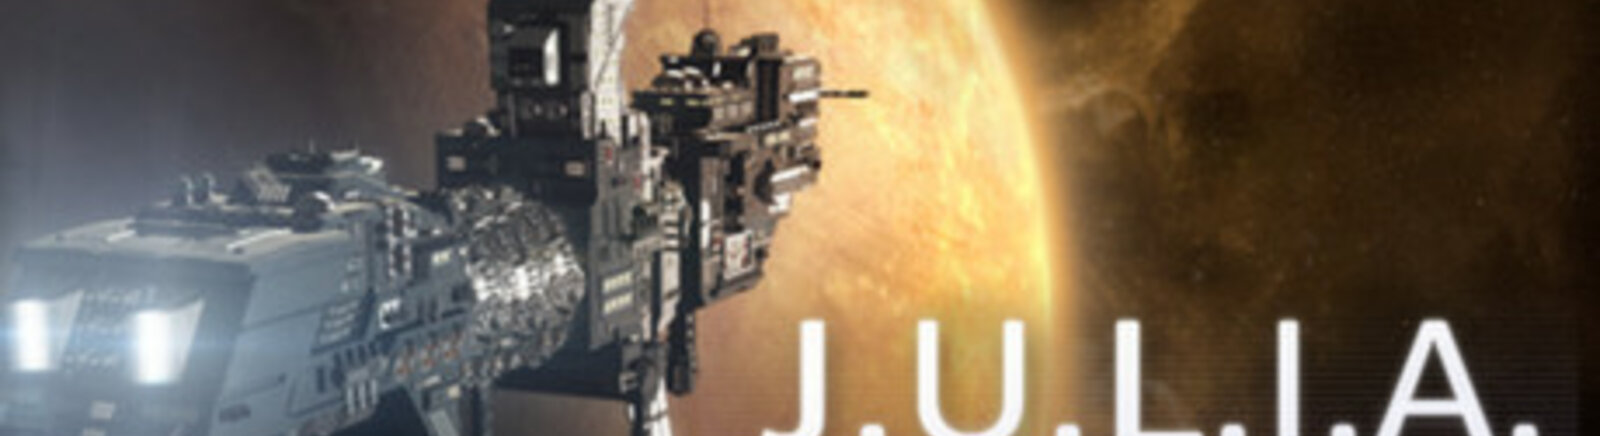 Дата выхода J.U.L.I.A.: Among the Stars  на PC, Mac и Linux в России и во всем мире